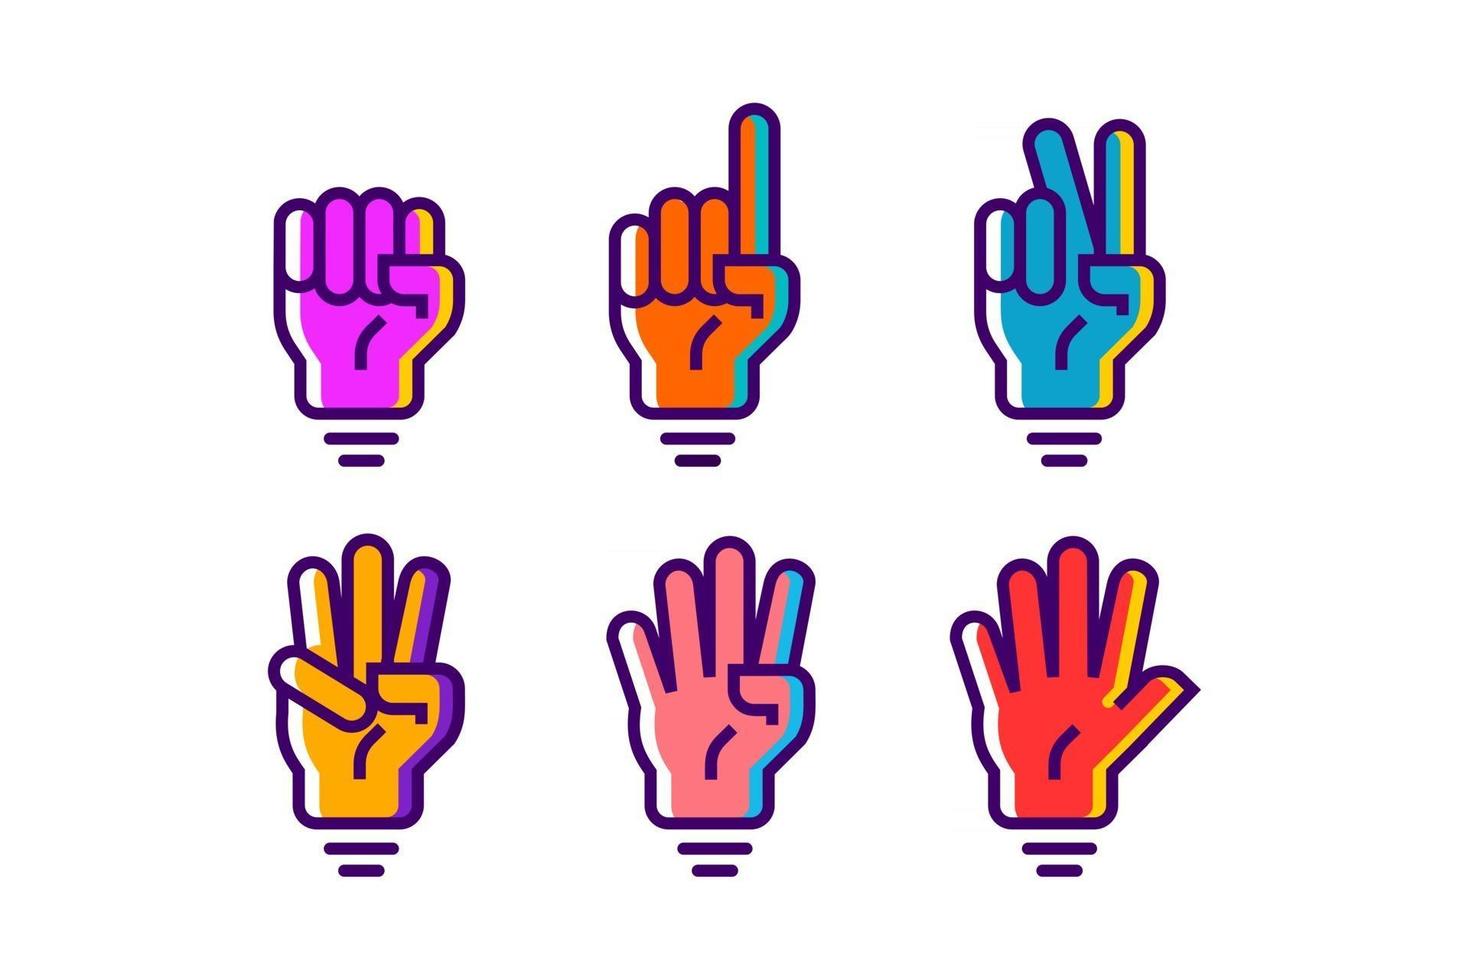 färgrik räkning av handgester 1 2 3 4 och 5 vektorikonillustration i trendig tecknad fylld linje stiluppsättning illustration, räknar handvektordesign i modern neonfärg vektor